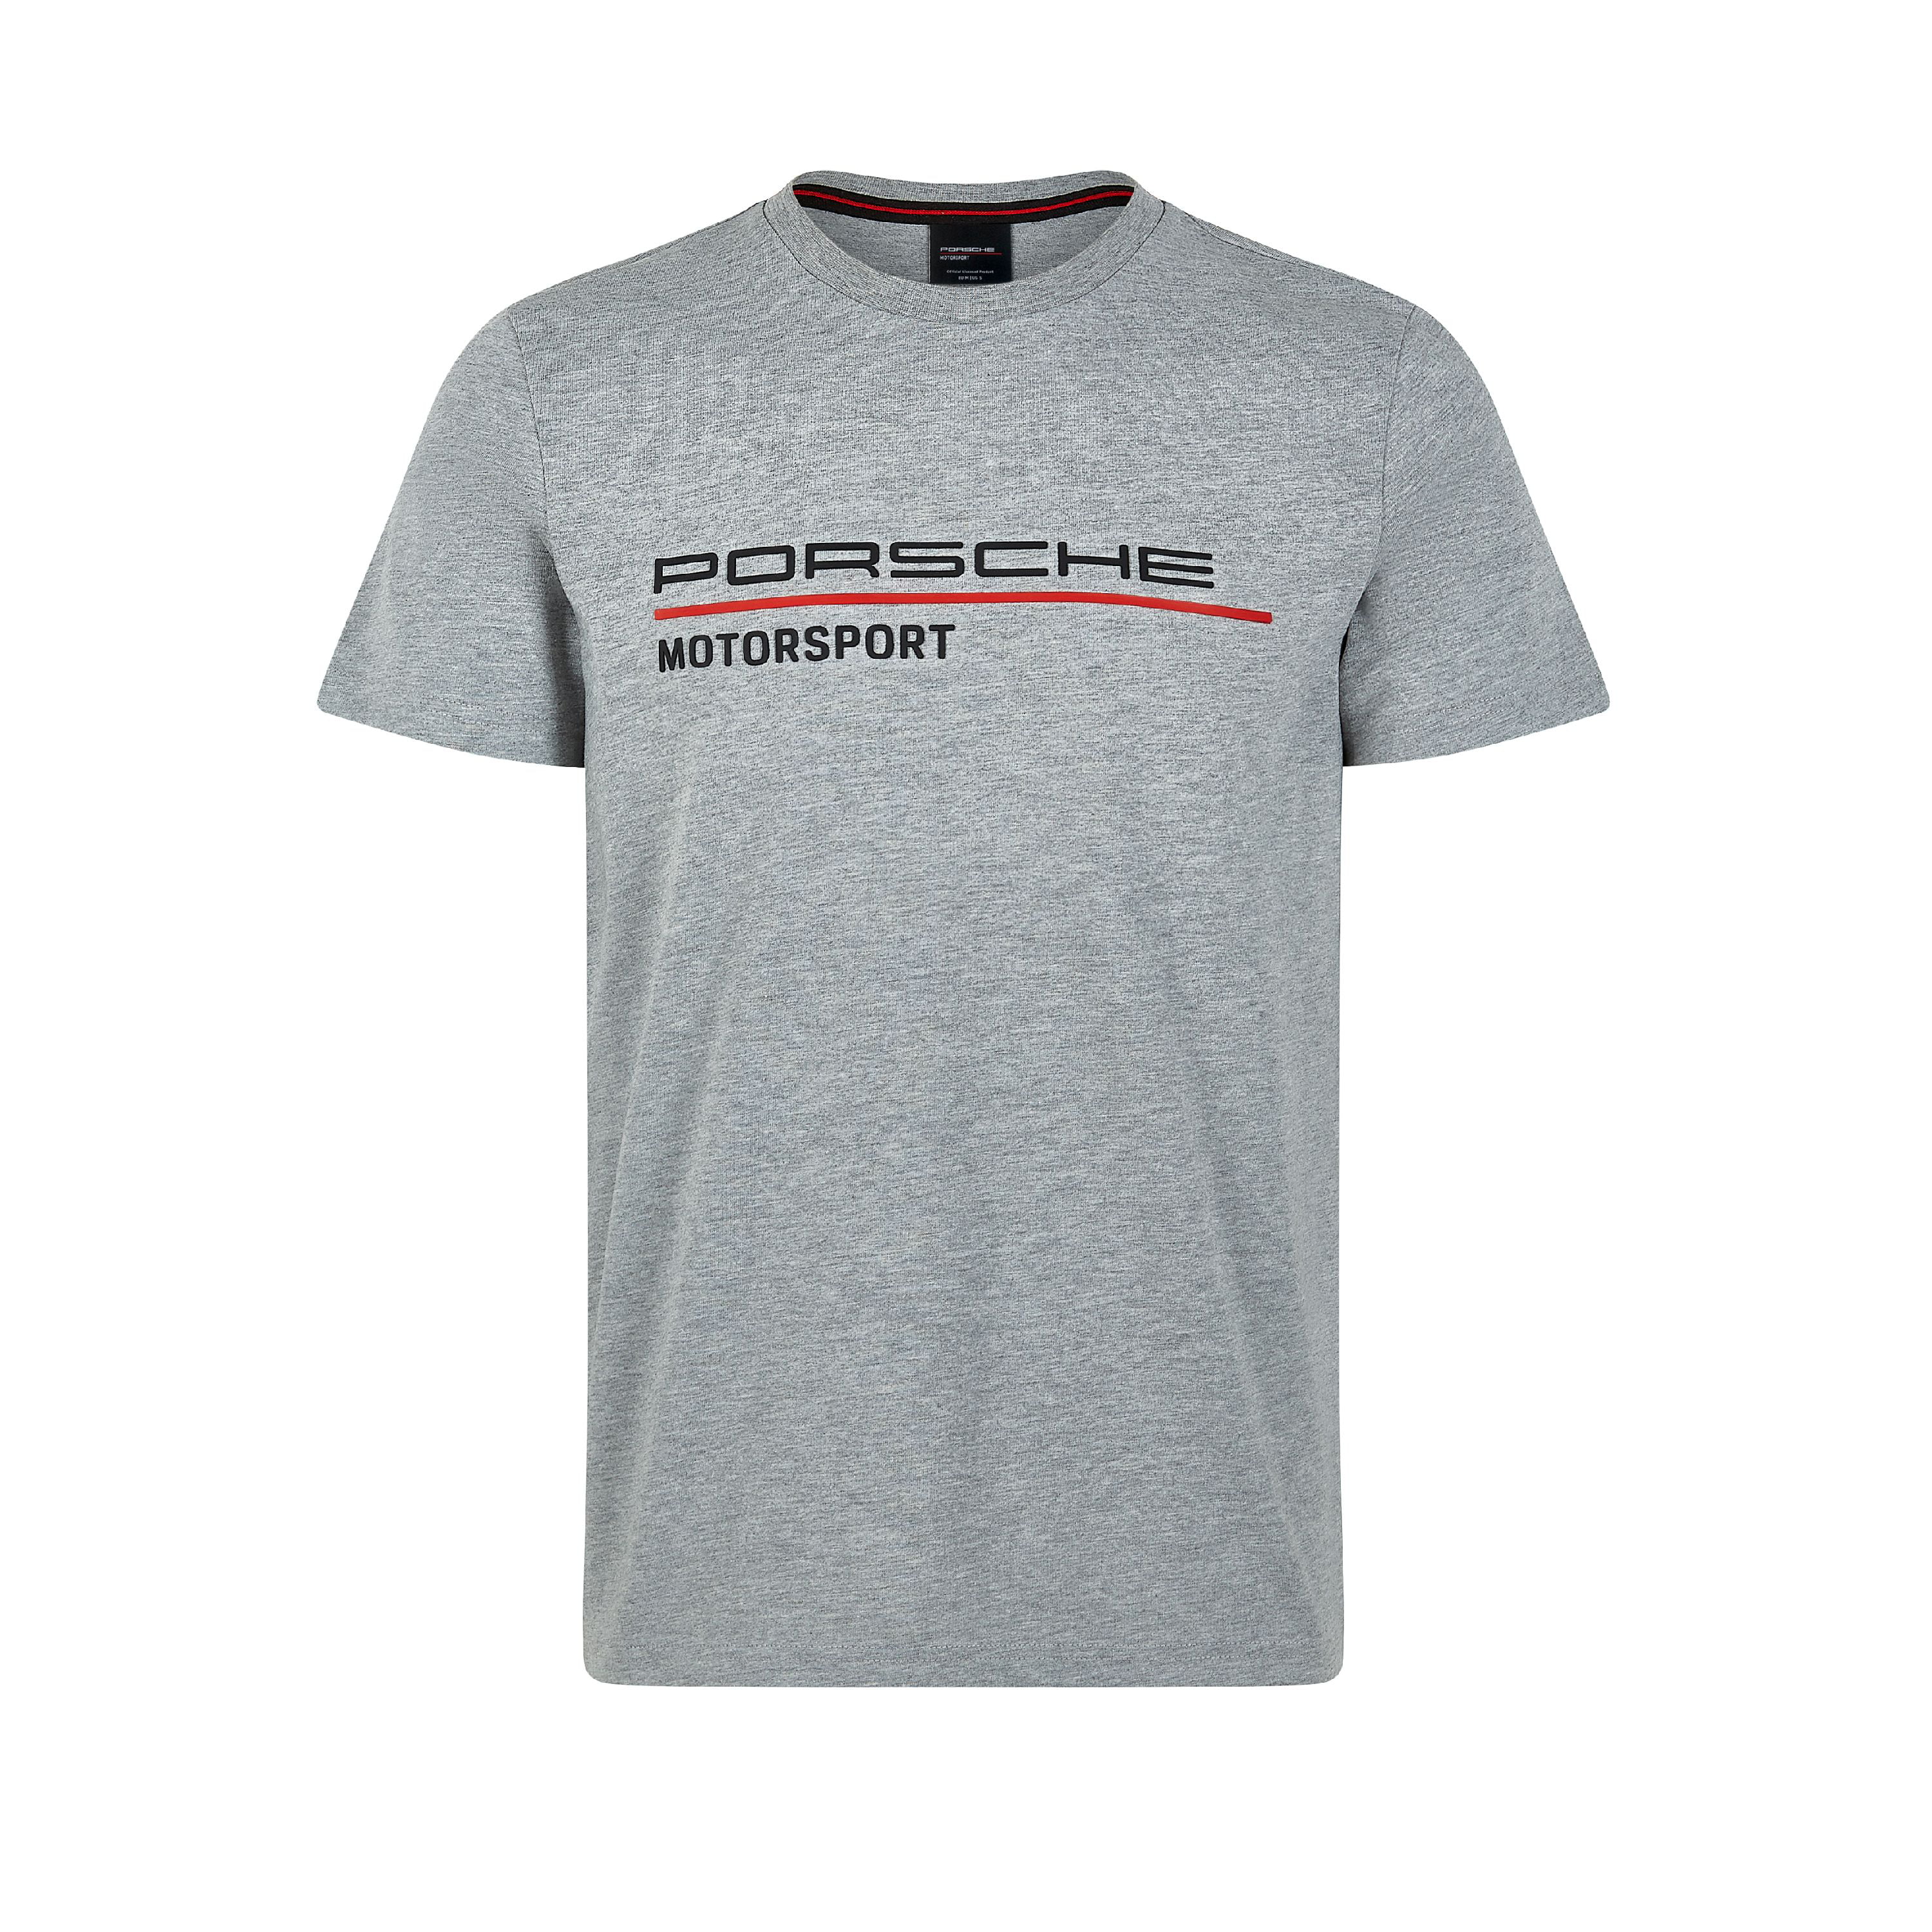 Porsche - Porsche Motorsport Men's Gray T-Shirt (L) - Walmart.com ...